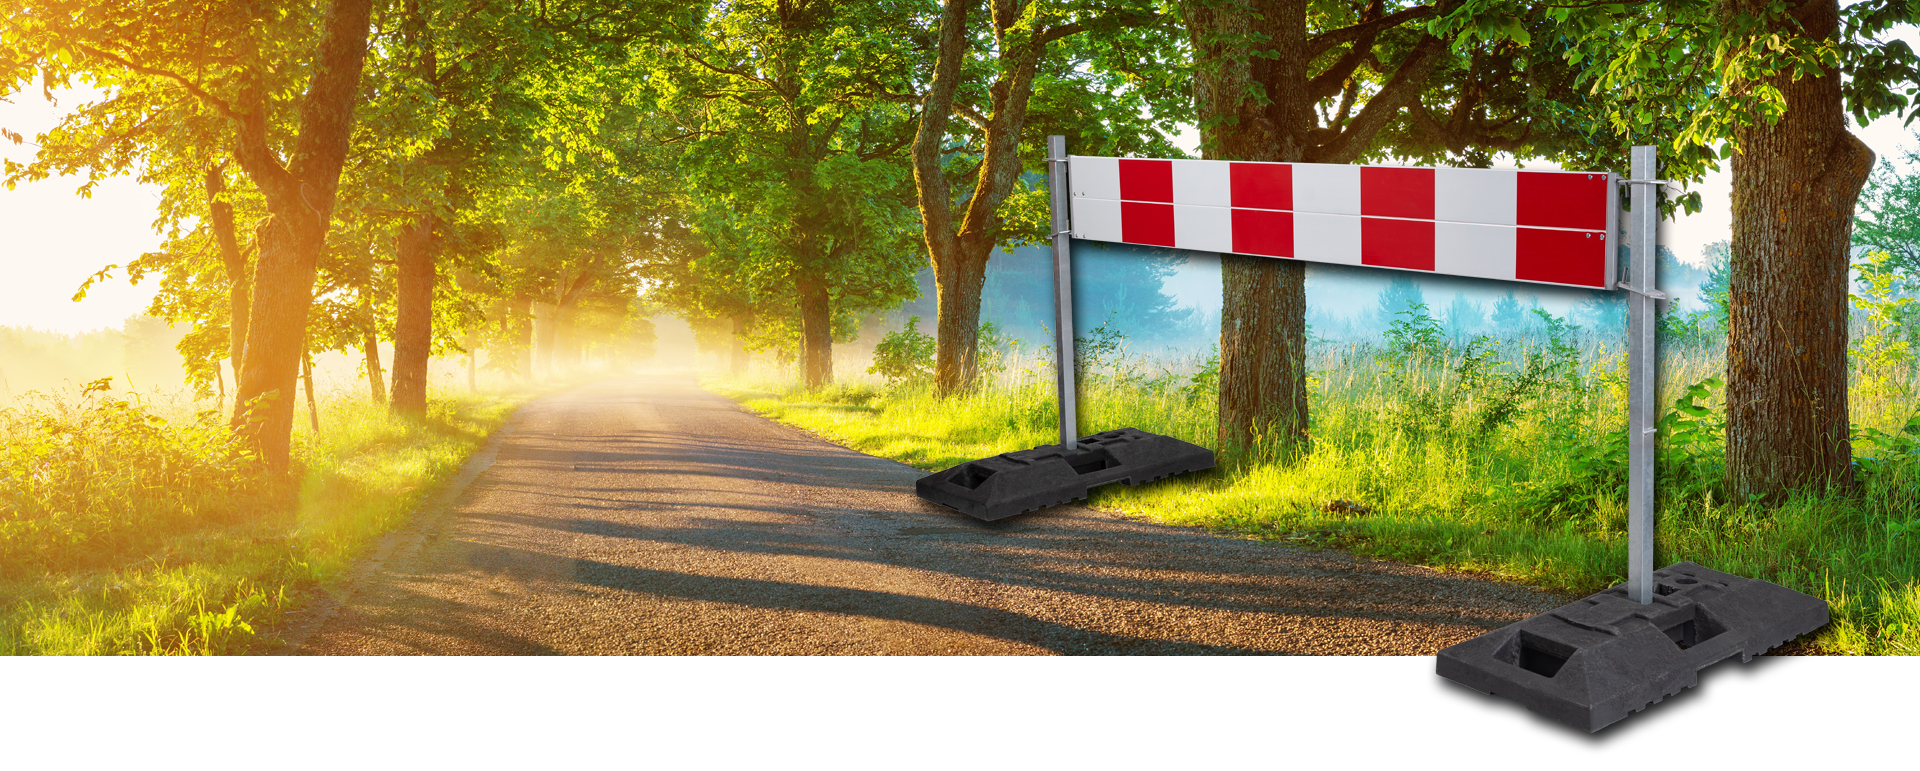 Podstawa do znaków drogowych – element niezbędny w czasie remontów